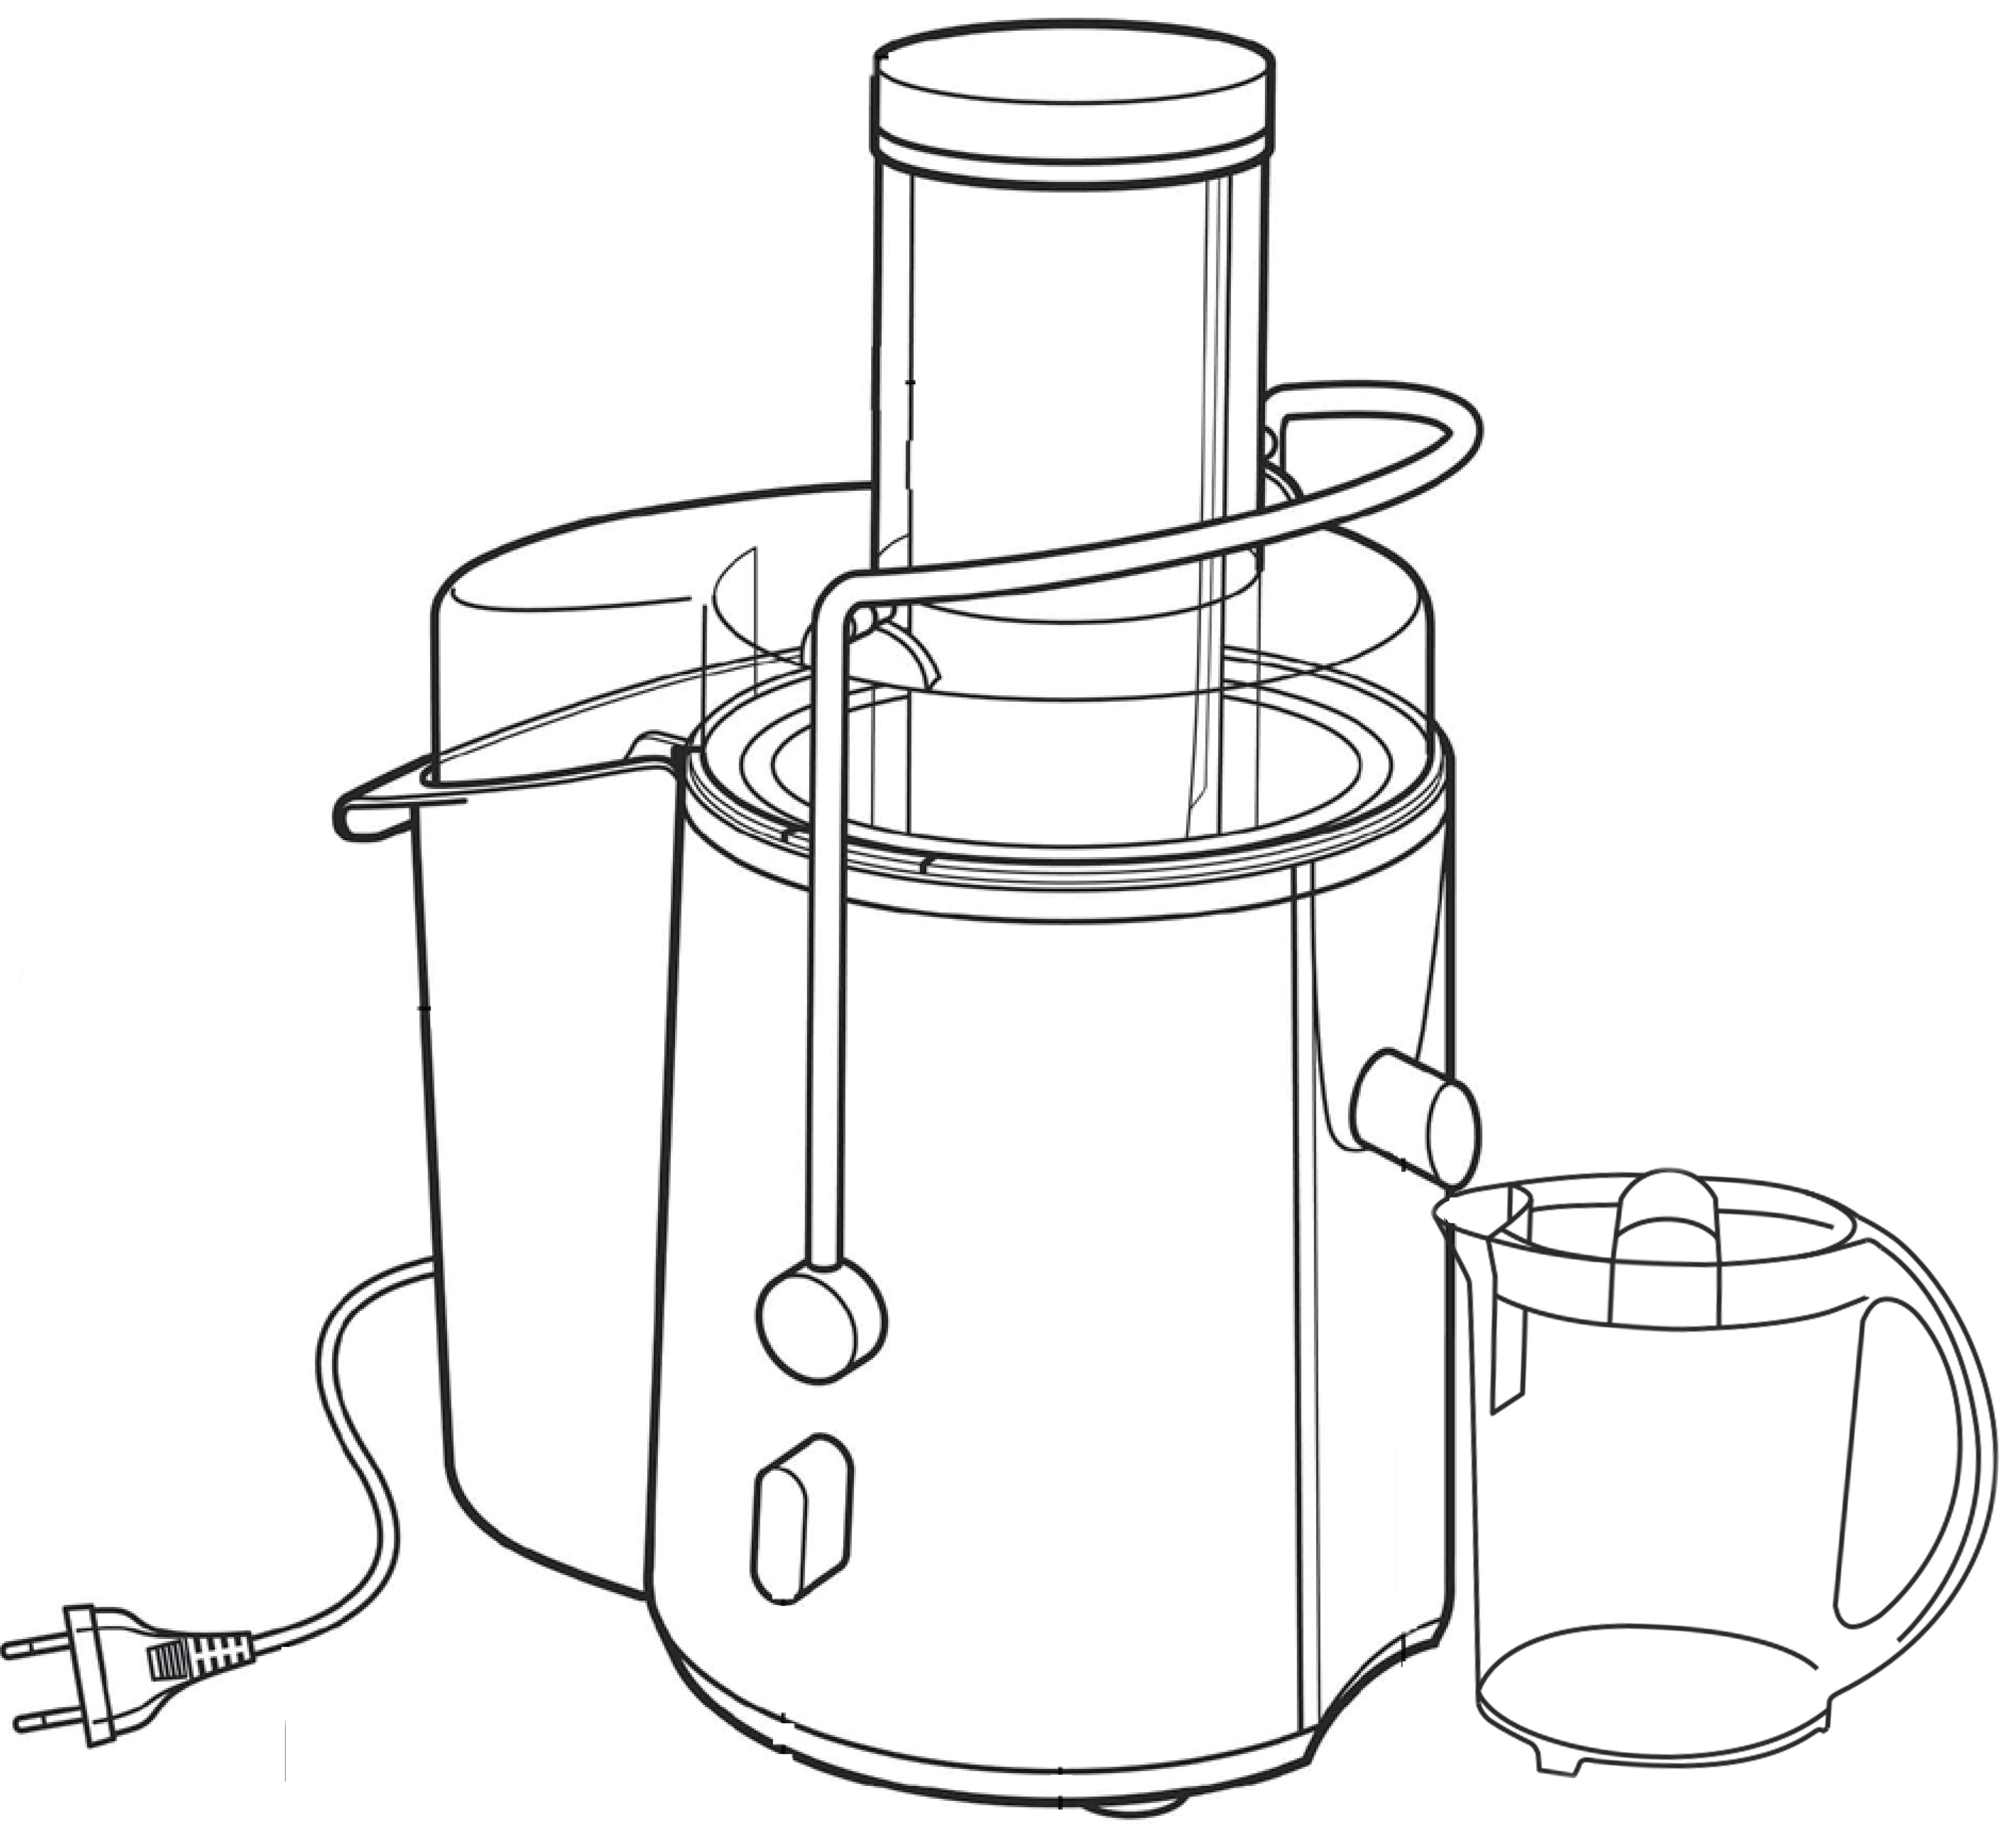 БТиЭ - Гаджеты кухонные - Соковыжималка - Juicer - устройство для выжимания сока из фруктов, ягод и овощей